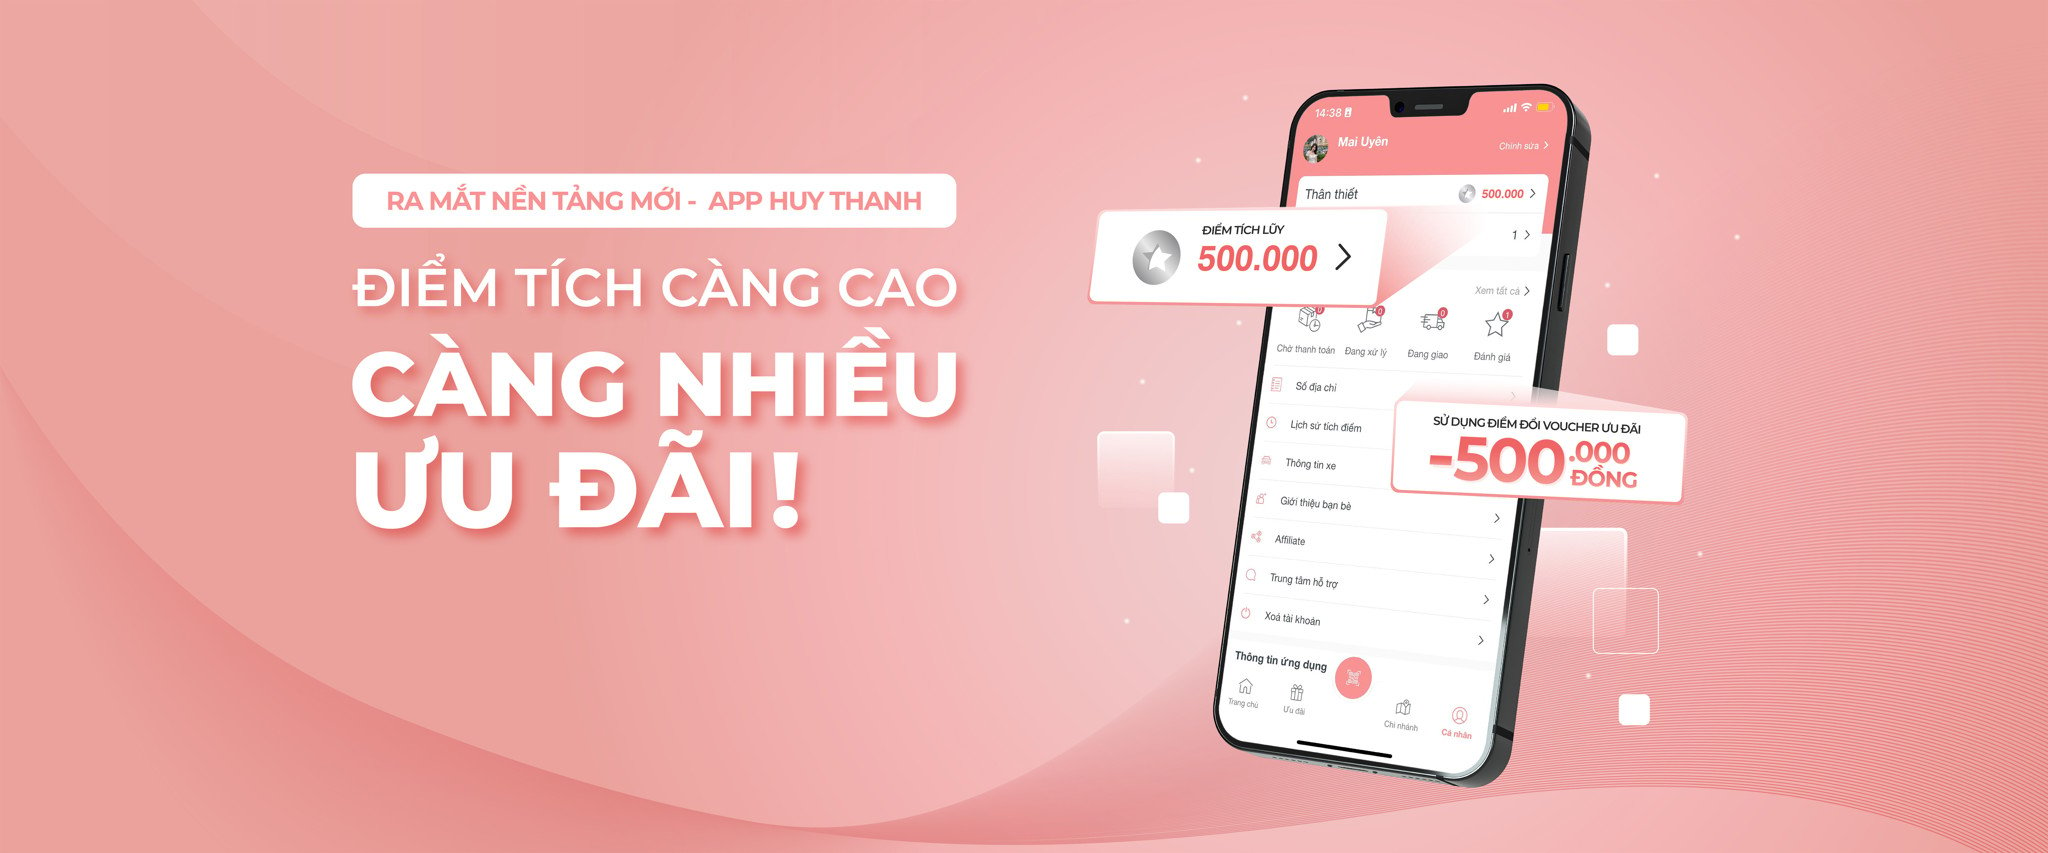 Ra mắt nền tảng mới - App Huy Thanh